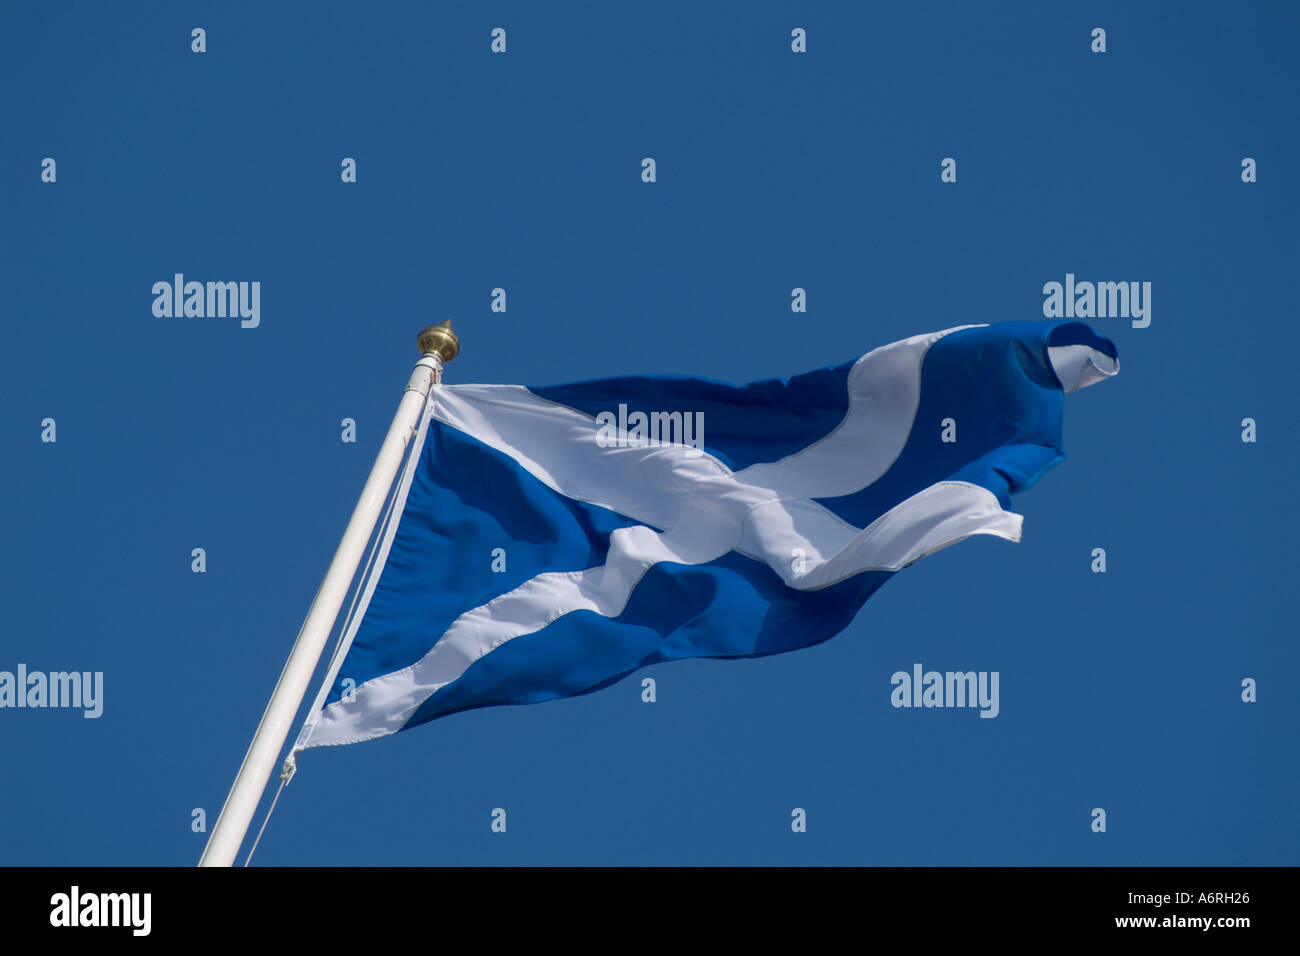 Bandiera scozzese di St Andrews si intraversa battenti in vento - direzione immagine a destra può essere ribaltato per adattarsi al formato Foto Stock